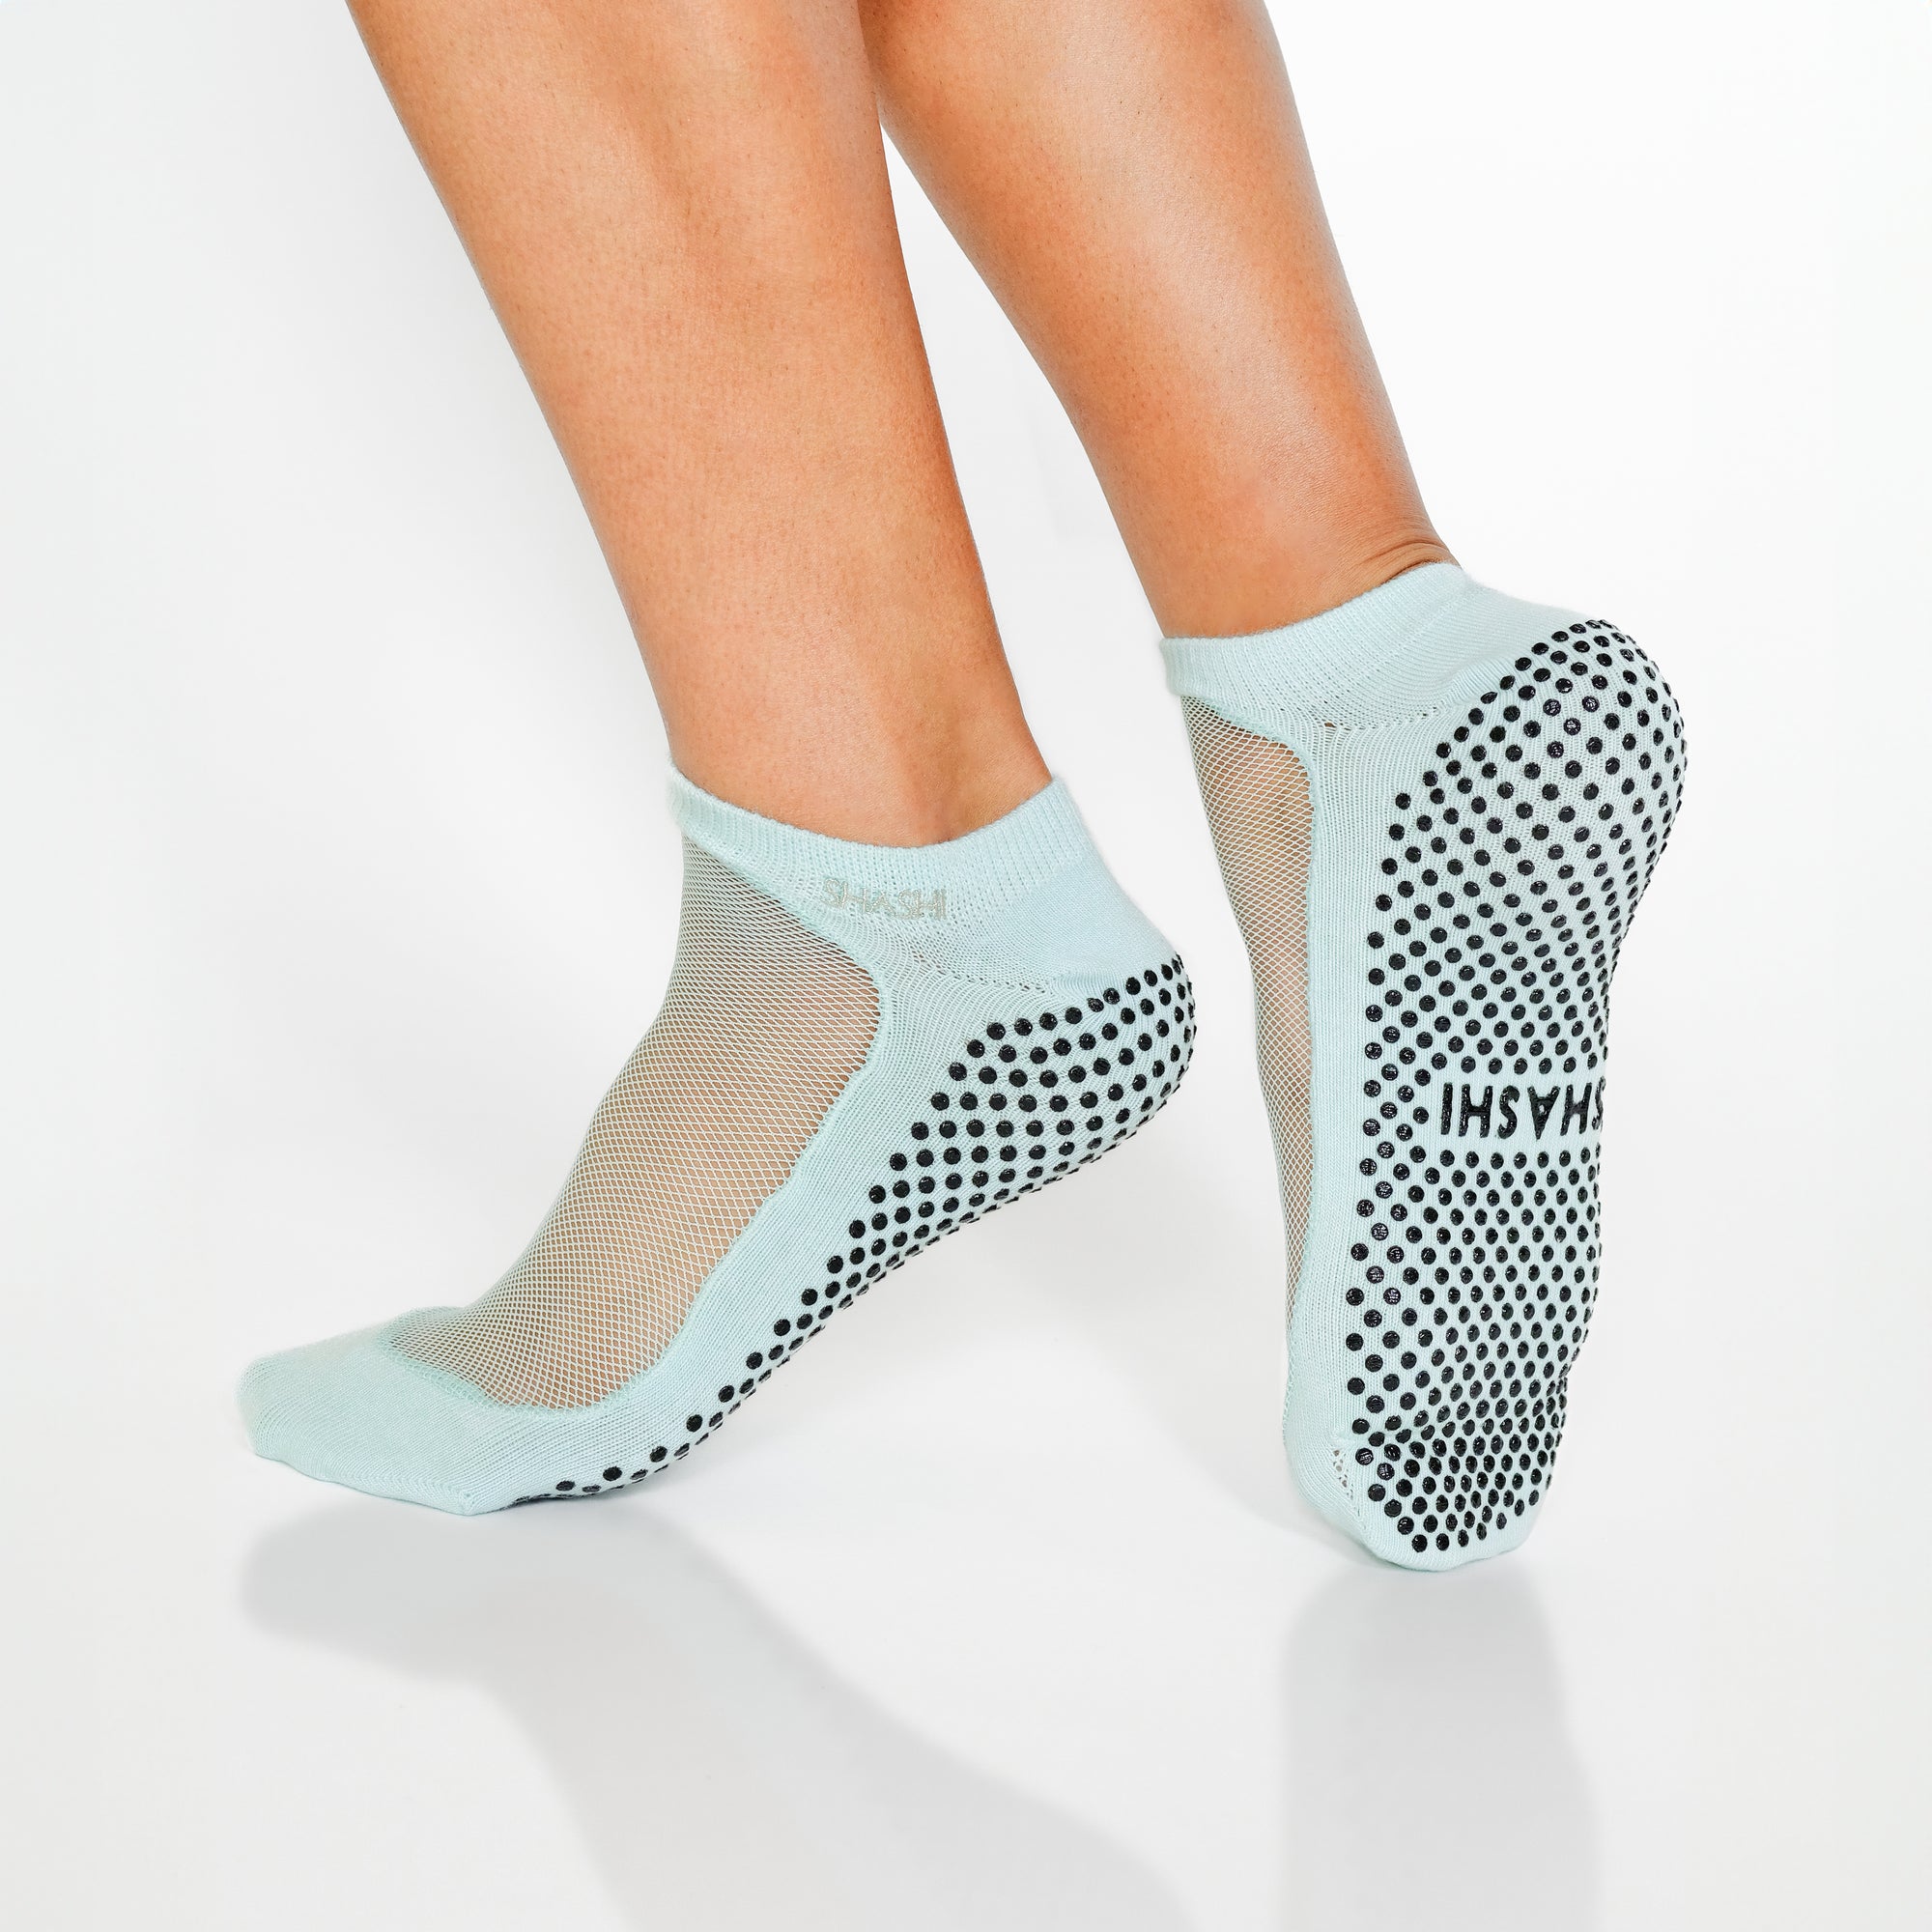 SISSEL® Yoga Socks / Yoga Socken S/M (Größe 36 - 40) in schwarz Größe S/M  (36-40)